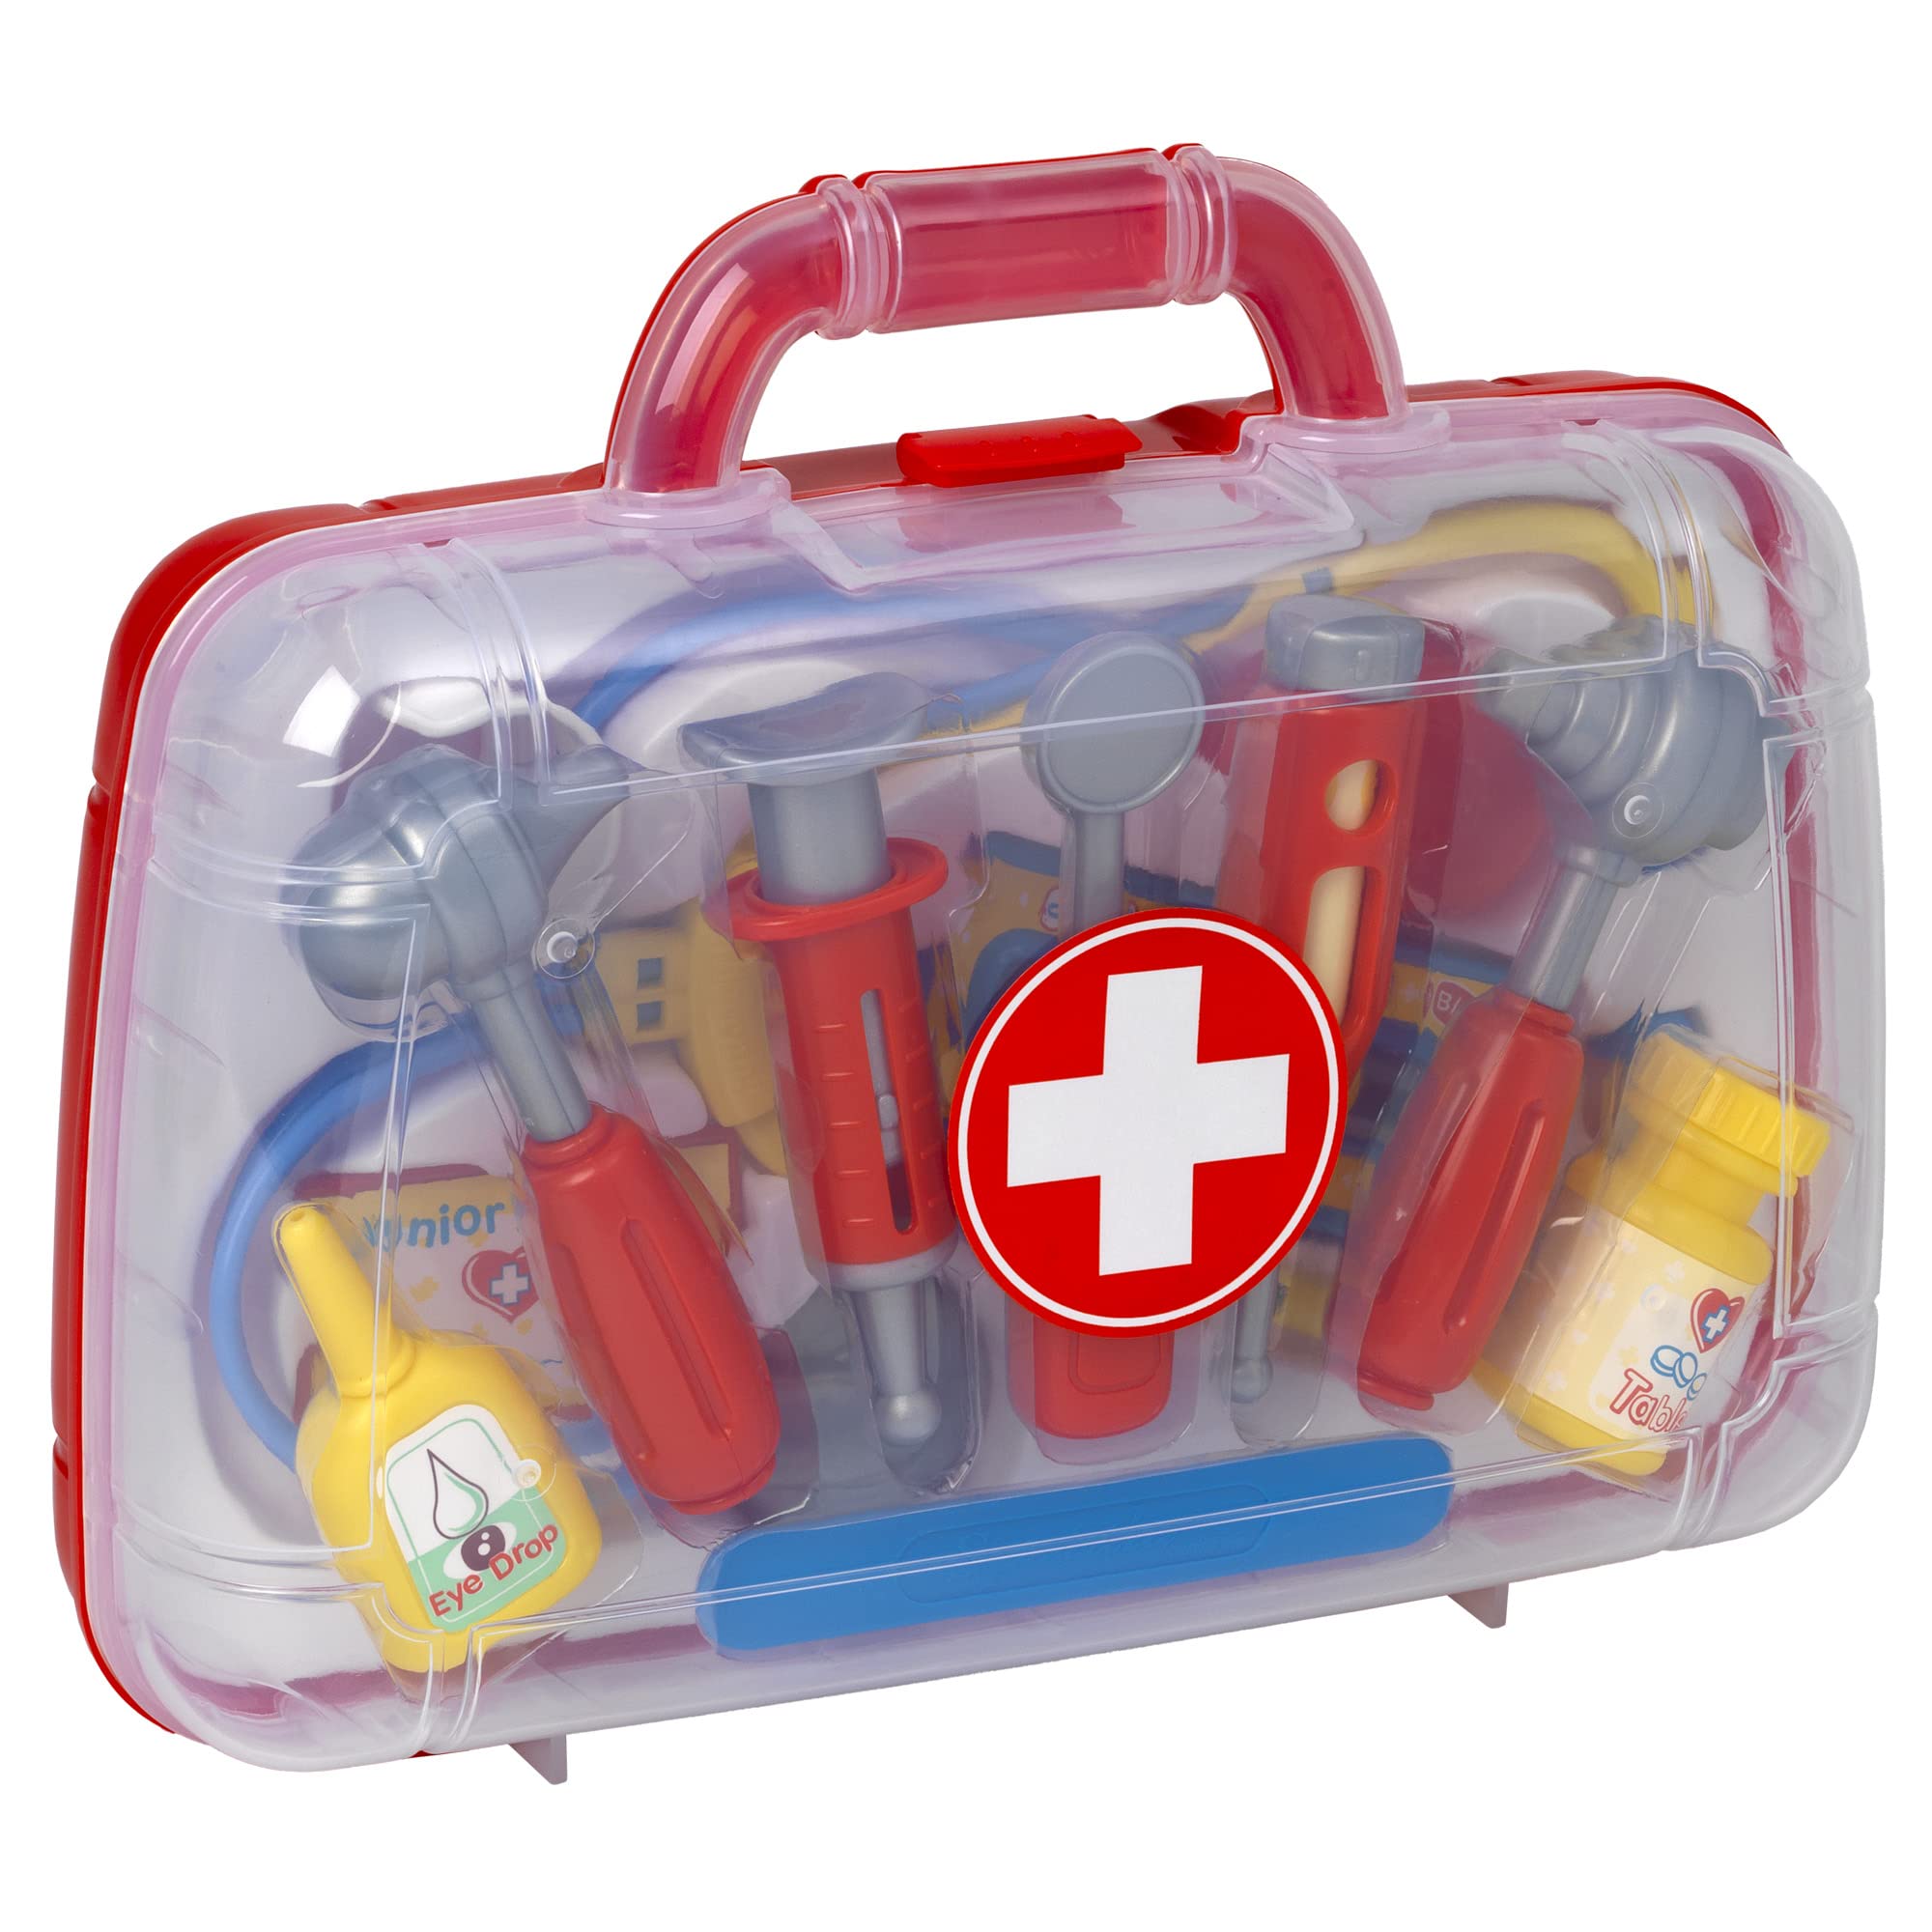 Peterkins Medical Kit Playset